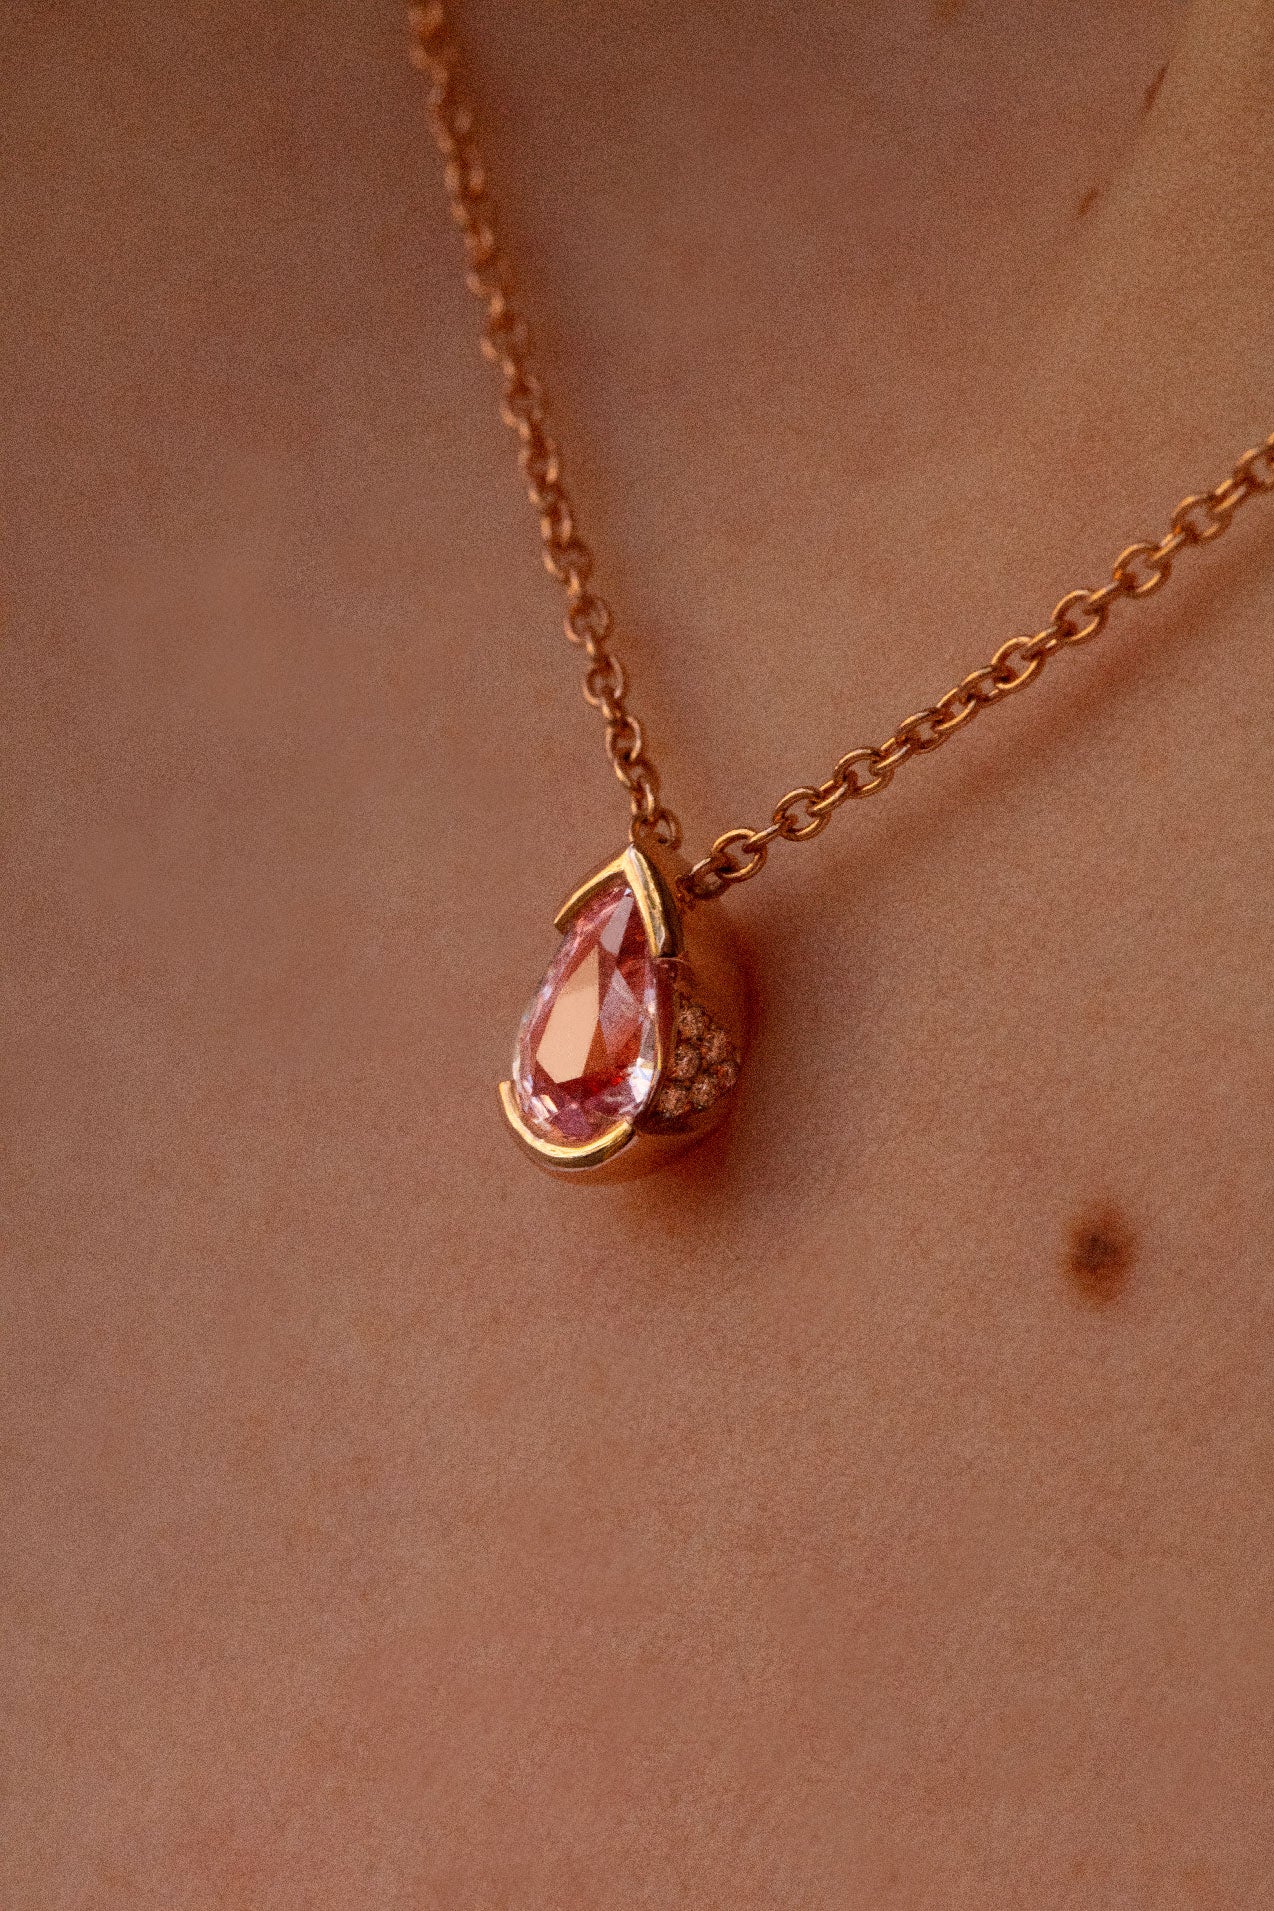 Photo zoomé sur les détails minutieux du collier en saphir rose. Des délicats diamants brillants ornent les bords latéraux du pendentif.